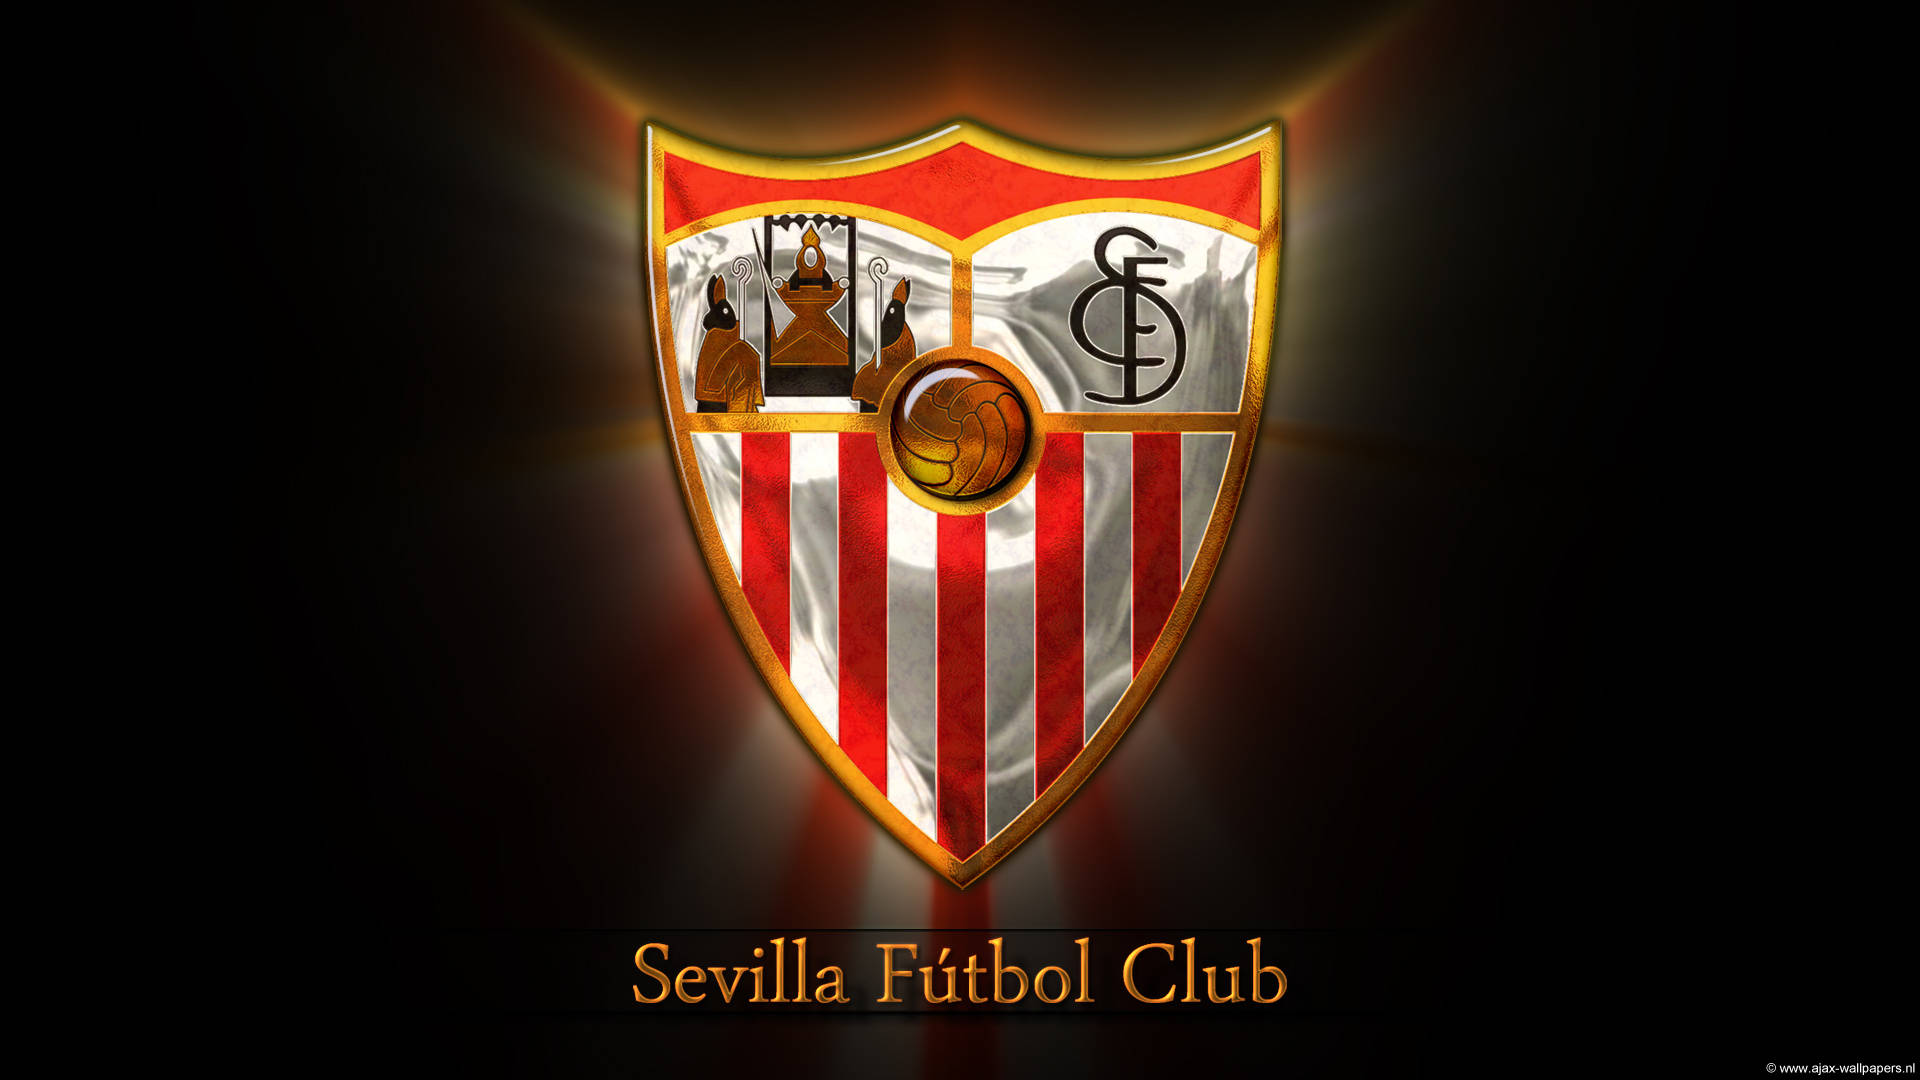 Sevillafc Fußballvereinslogo Wallpaper